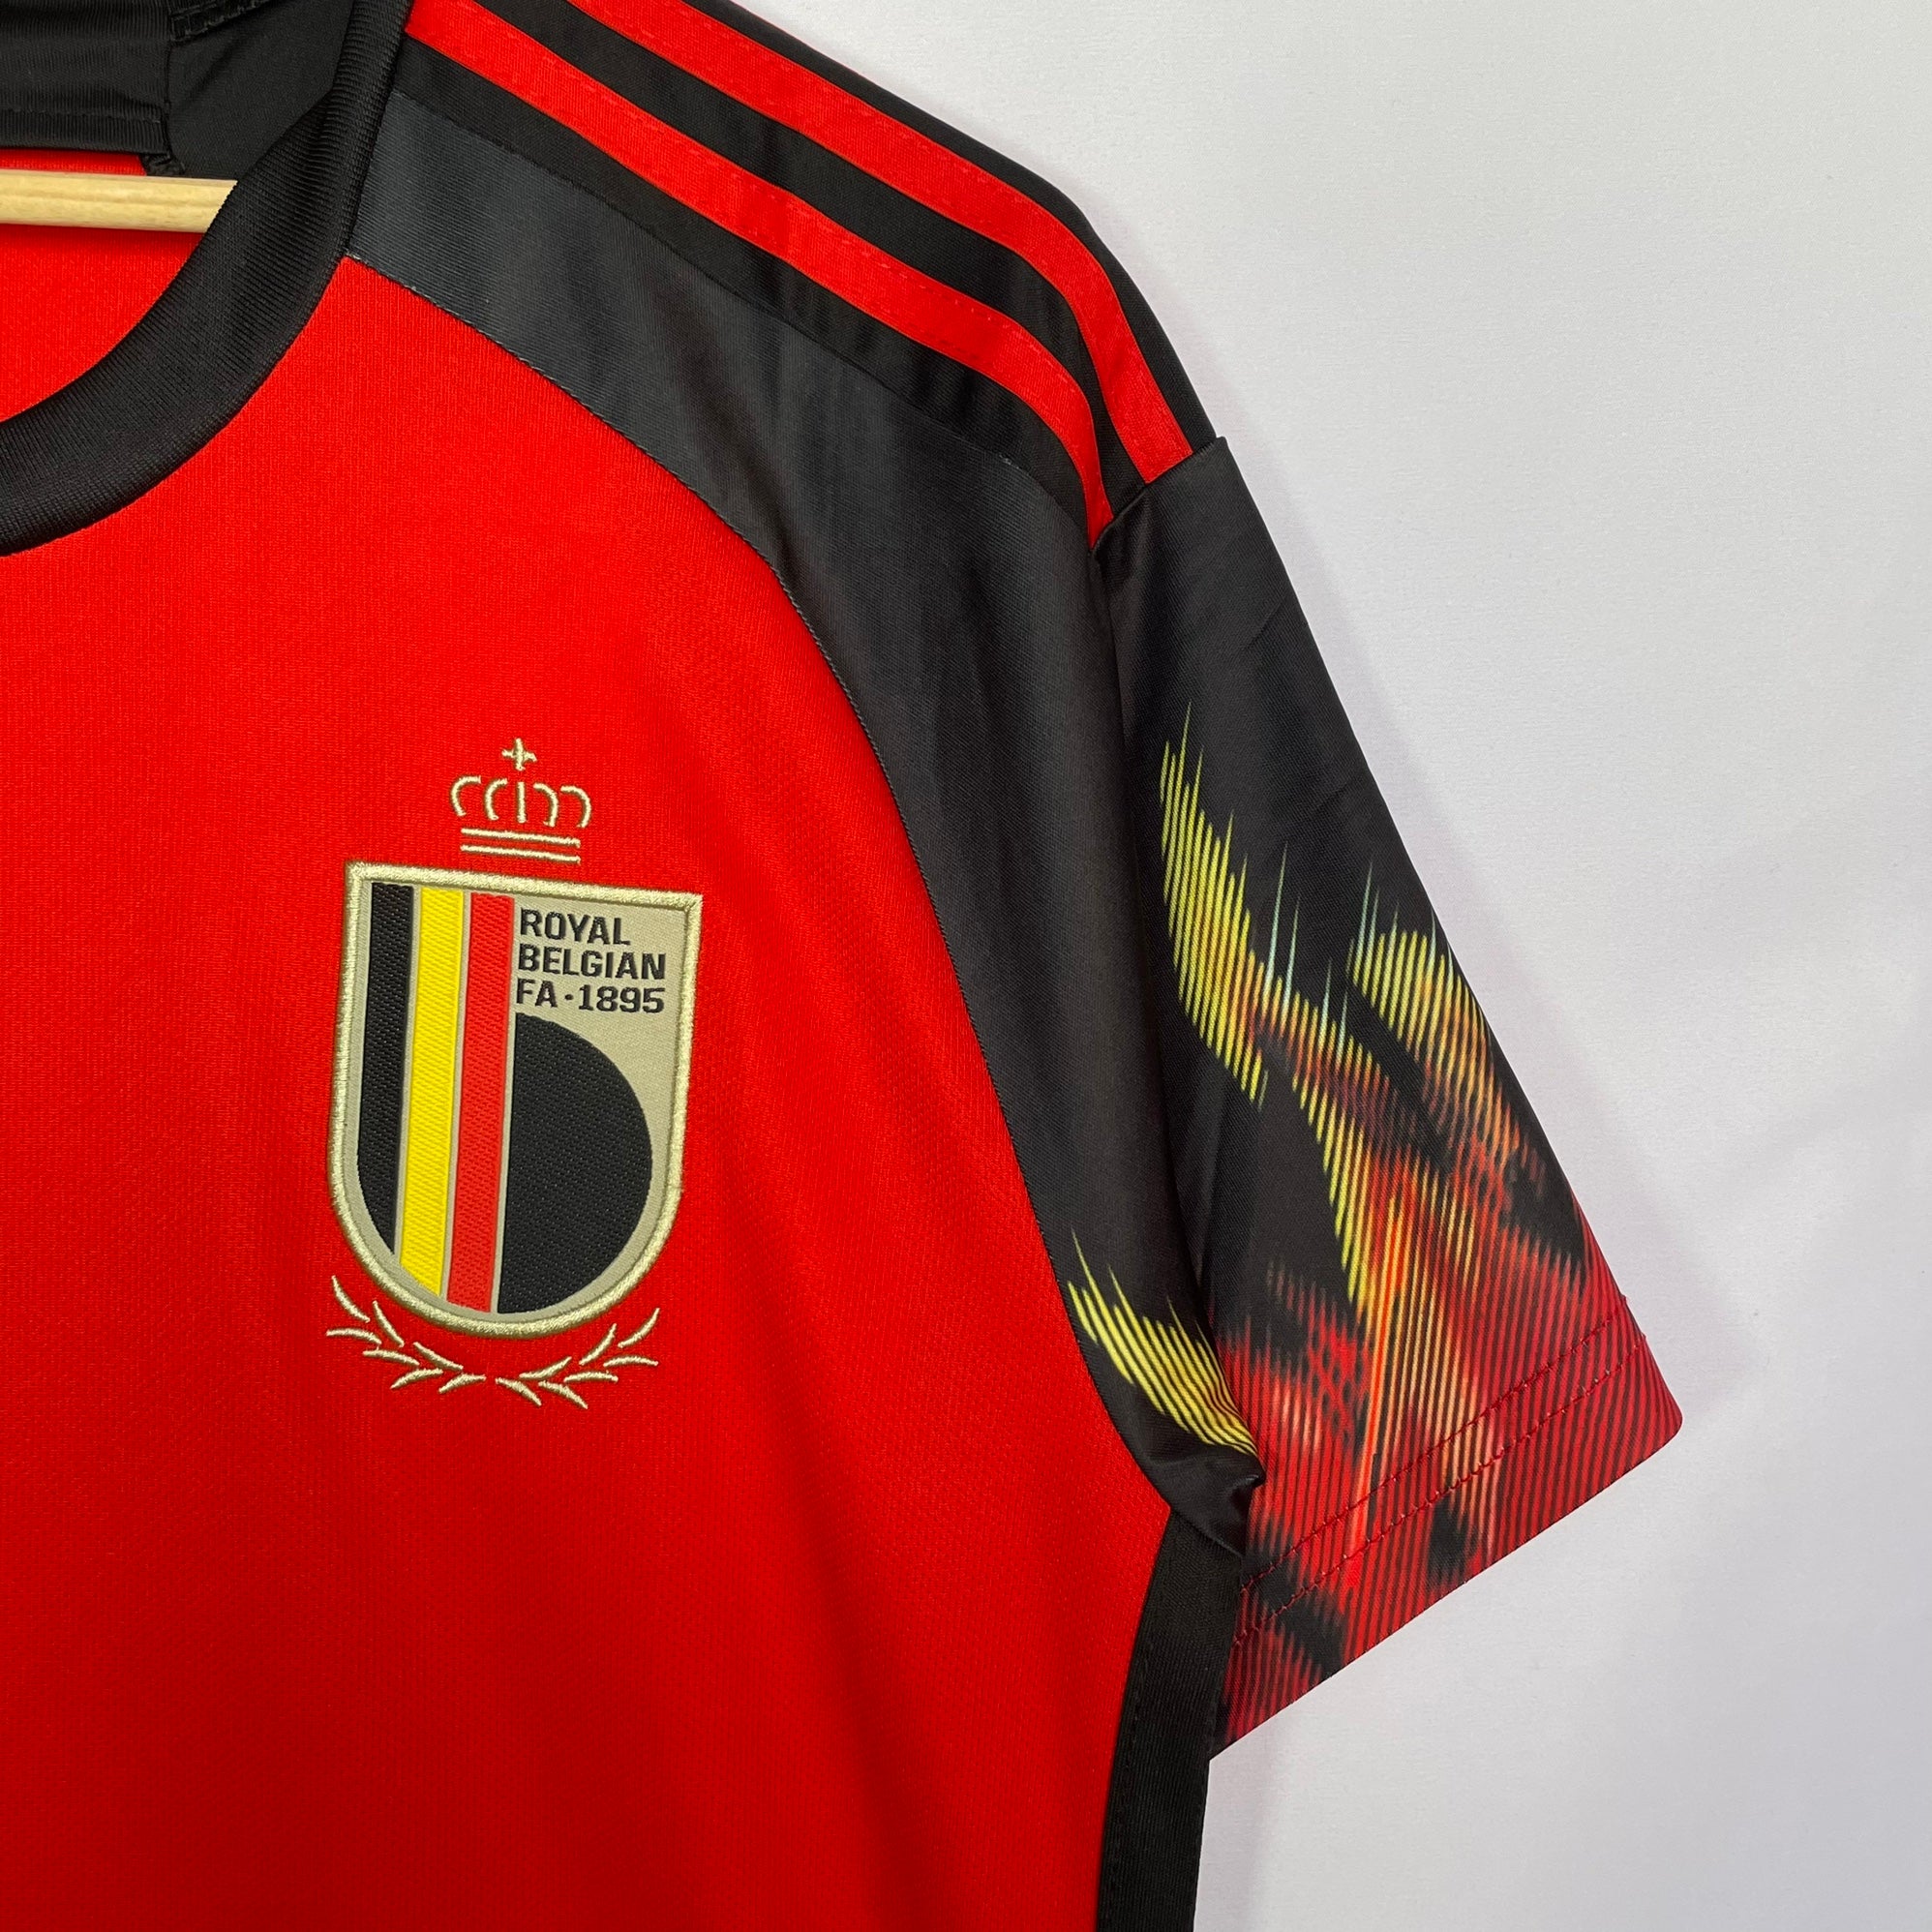 Royal Belgian FA-1895 Adidas US Belgium Jersey Sz S NEW